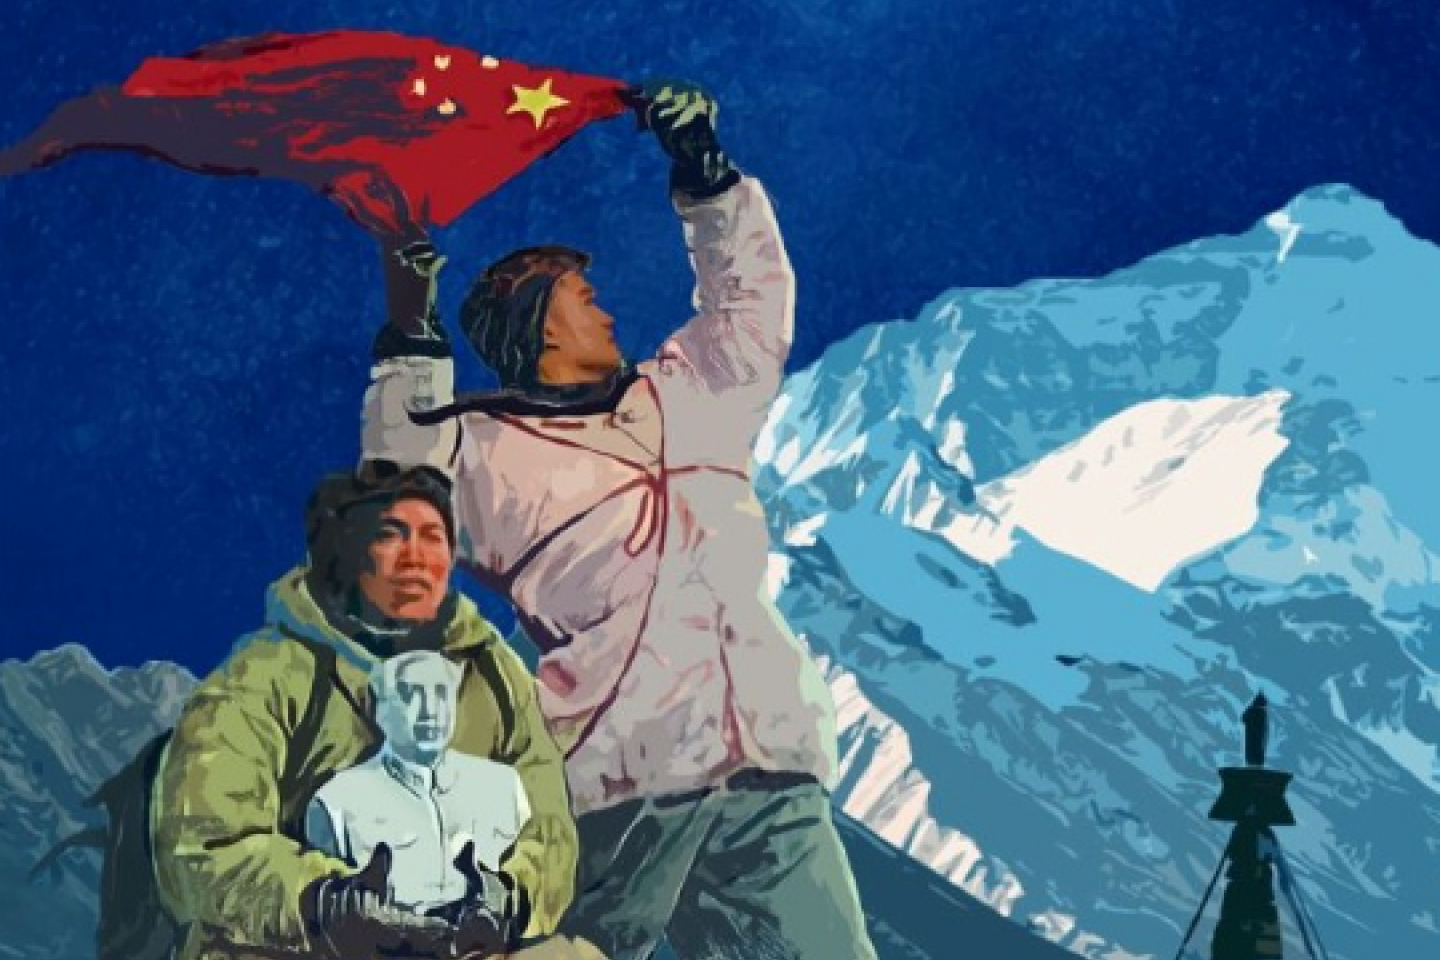 Regarder la vidéo « Alpinistes de Mao » : le « grand bond » des Chinois sur le Toit du monde